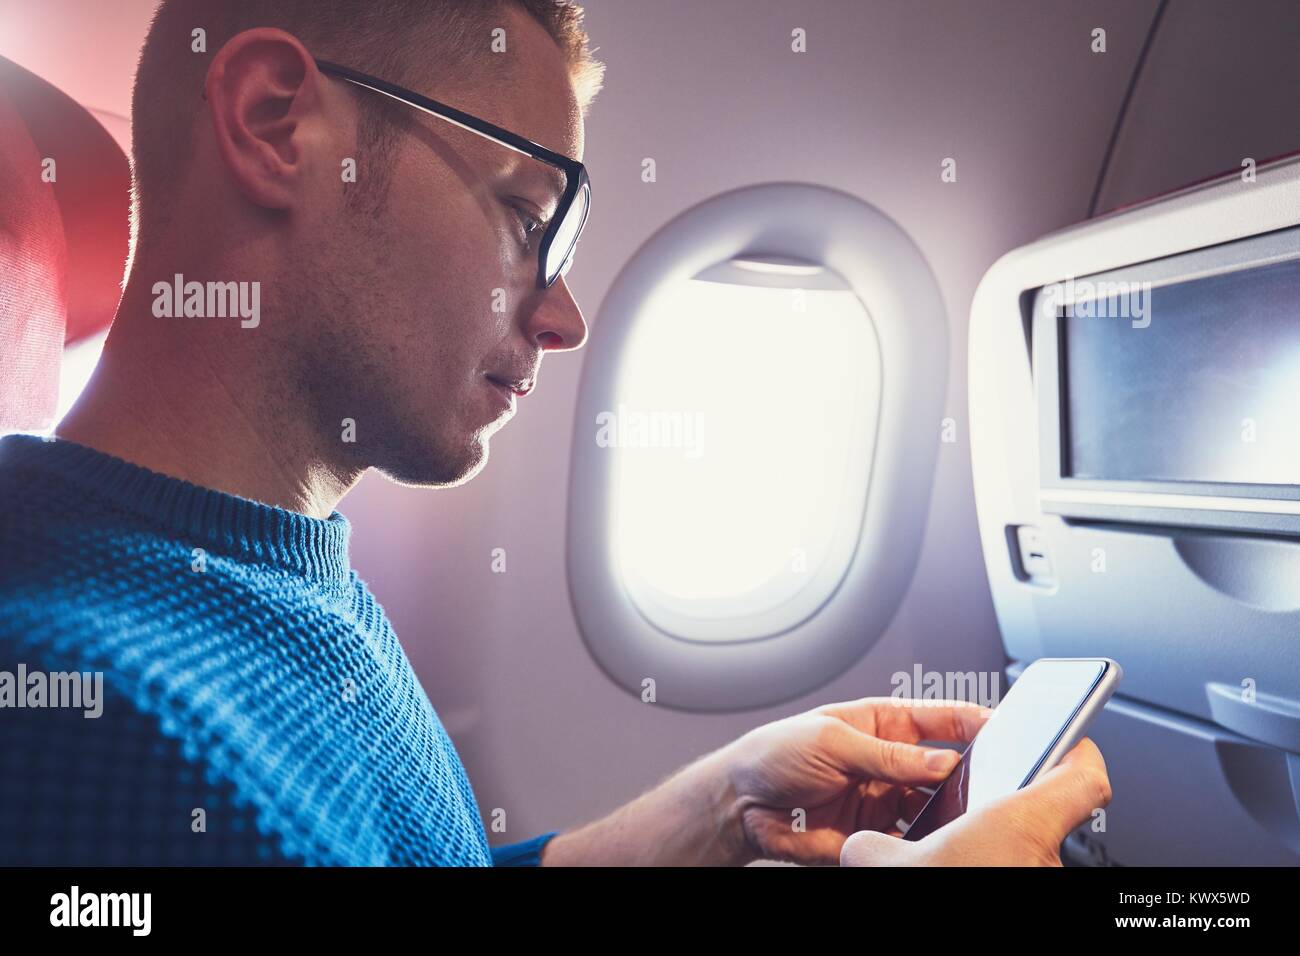 Conexión en el avión. Joven viajero (pasajero) utilizando el teléfono inteligente durante el vuelo. Foto de stock